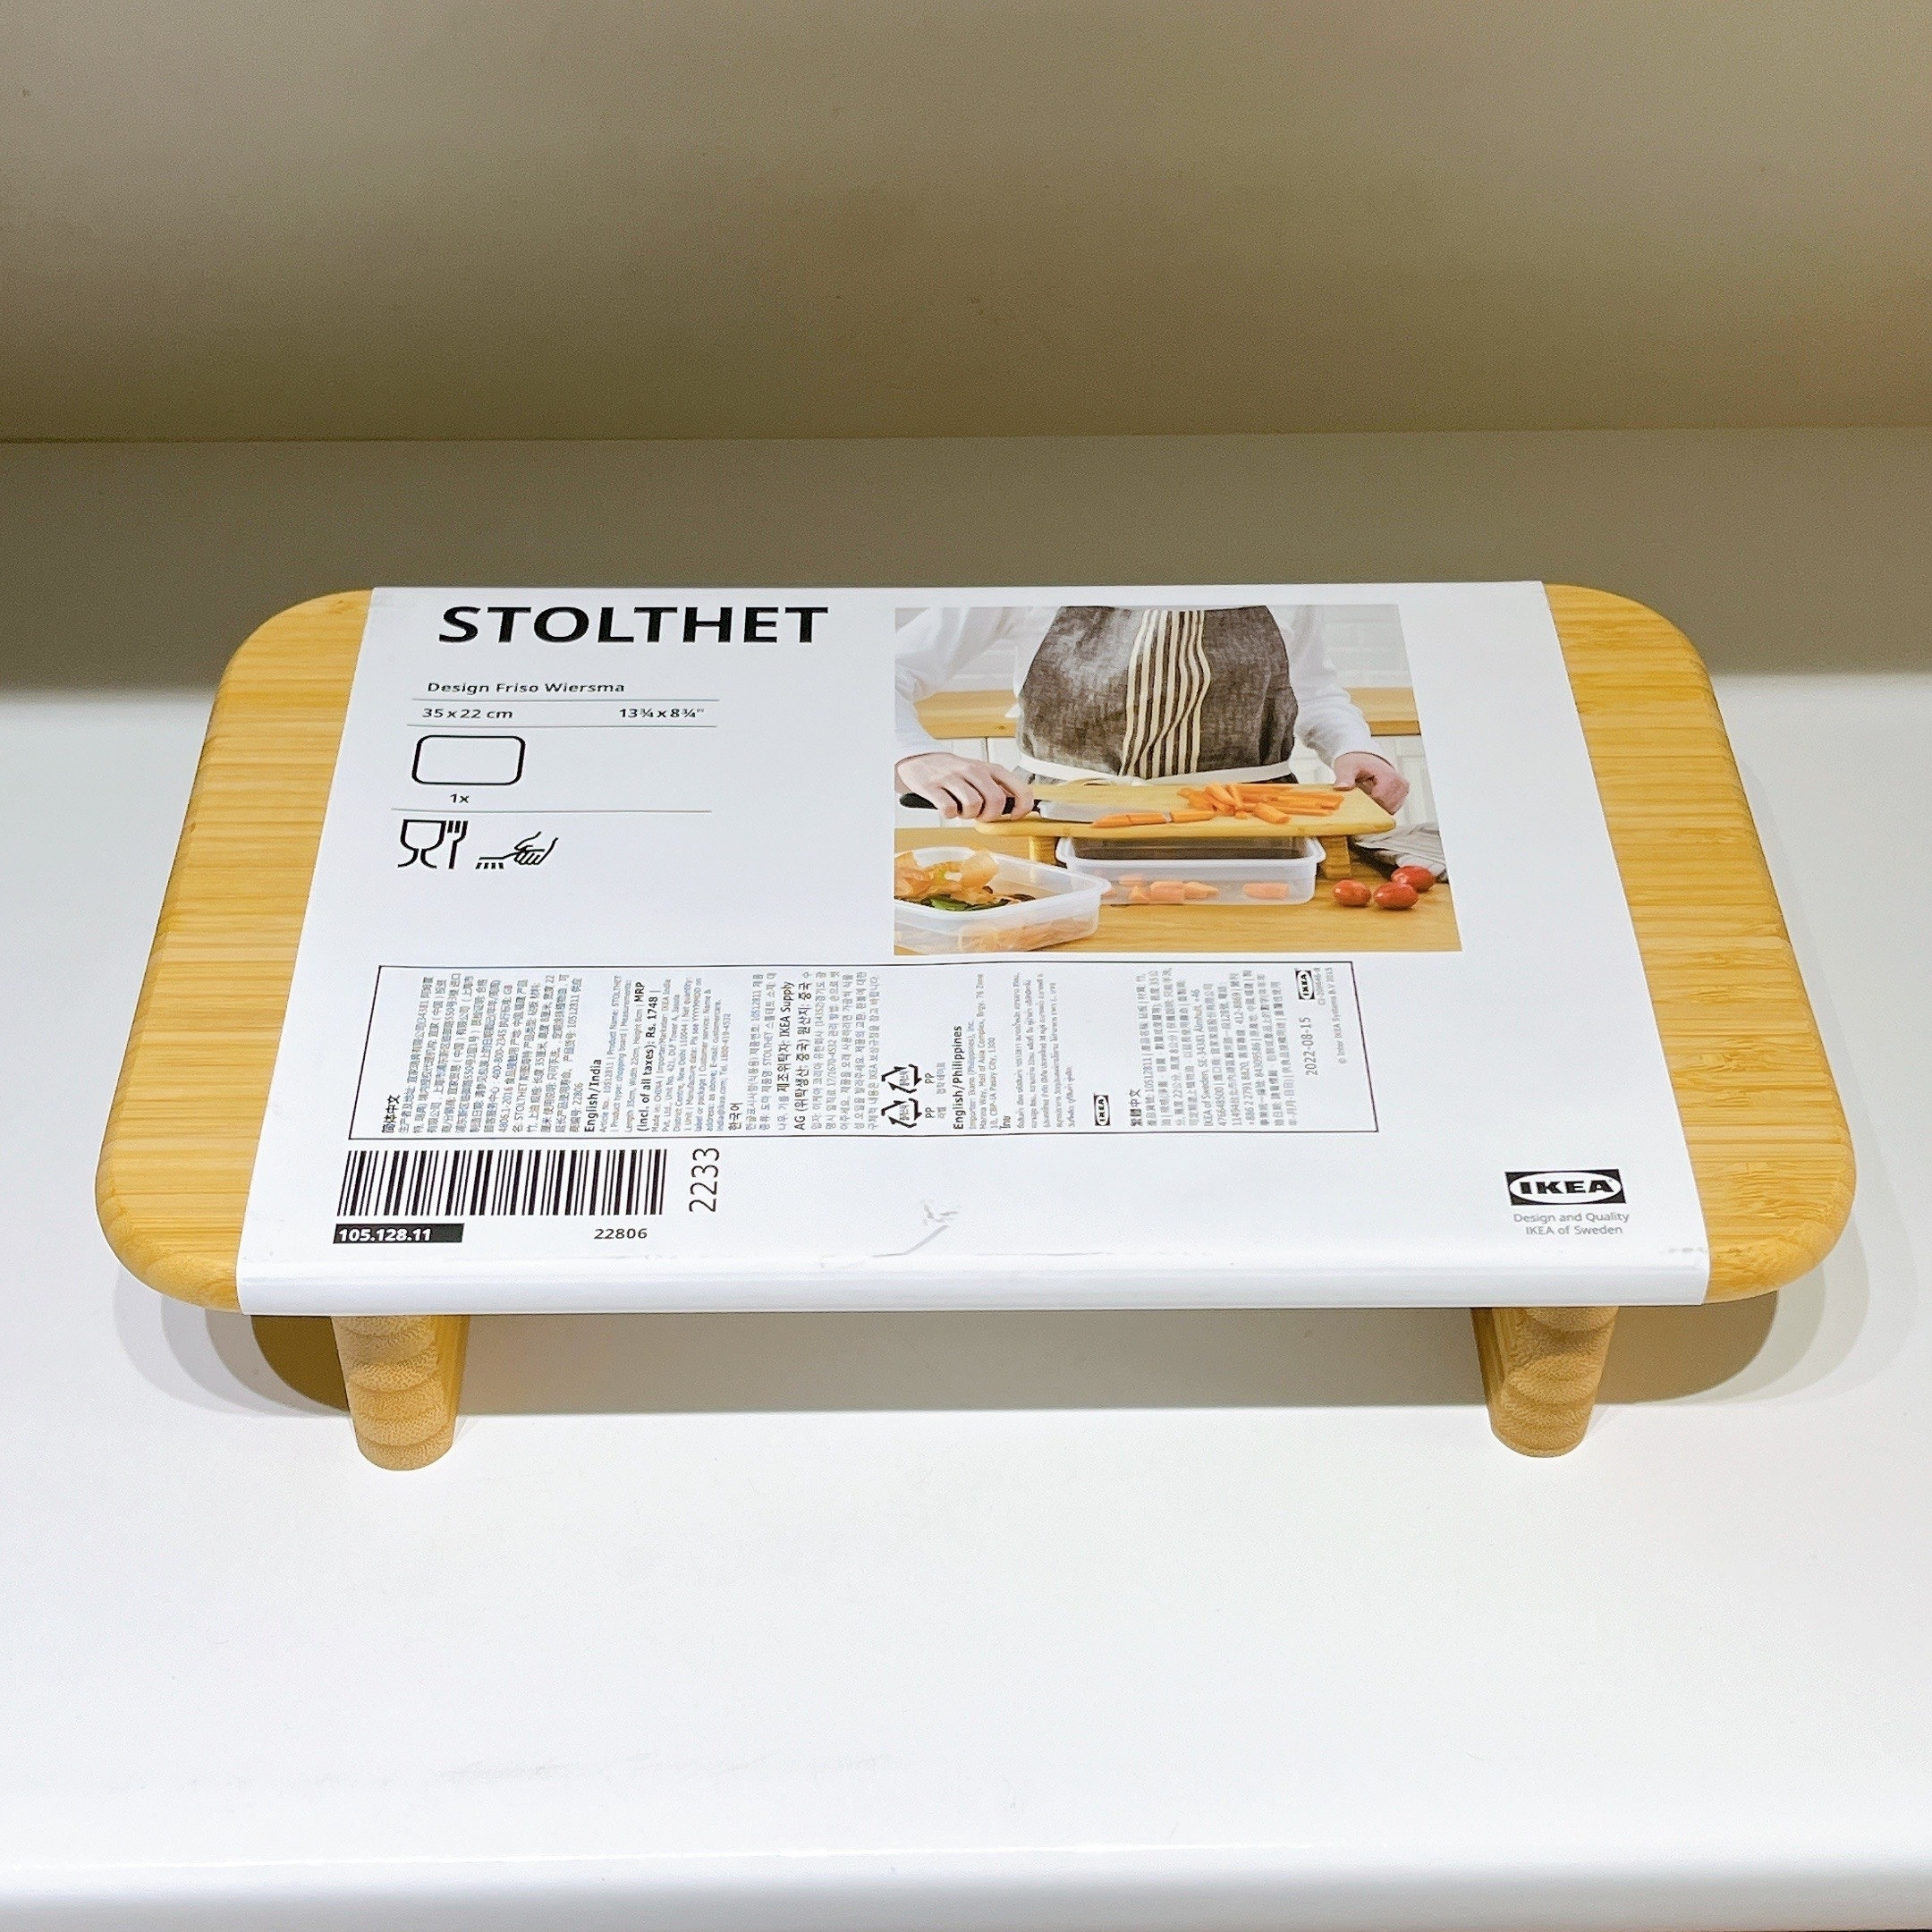 IKEA（イケア）のおすすめキッチングッズ「STOLTHET ストルトヘット」